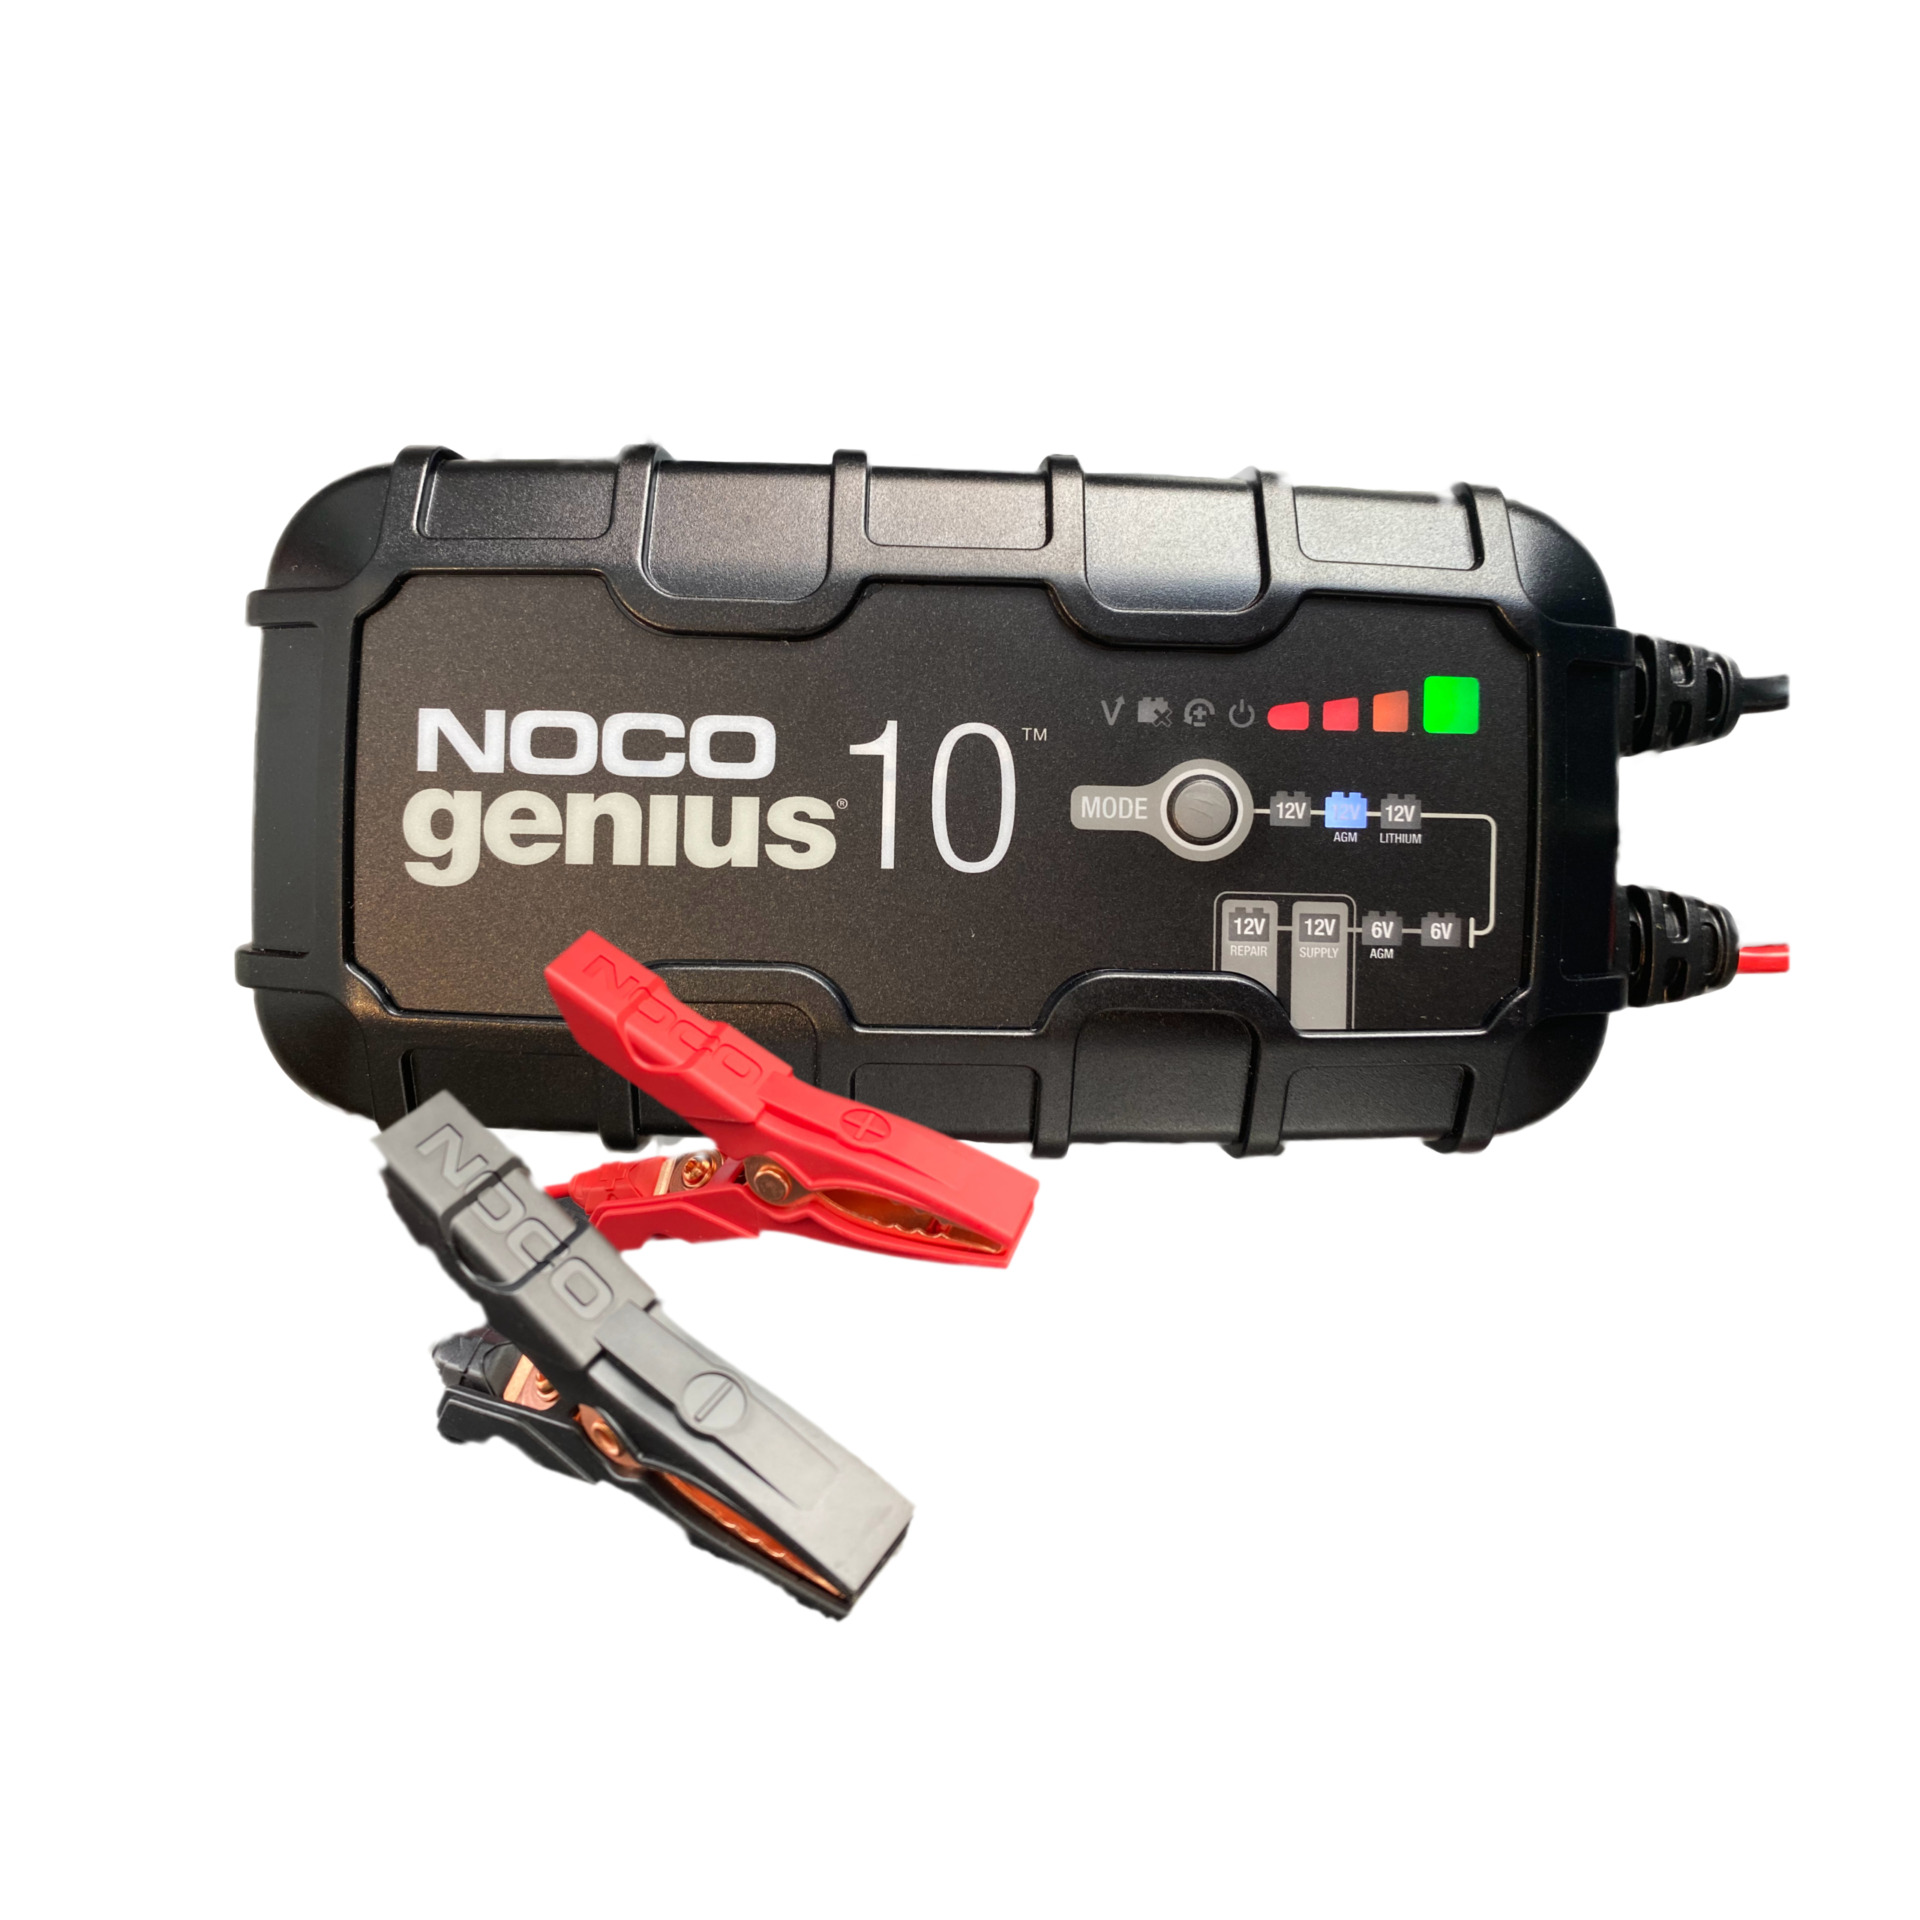 Autobatterie laden mit Ladegerät ohne Ausbau - NOCO GENIUS 10 - 8 einfachen  Schritte 